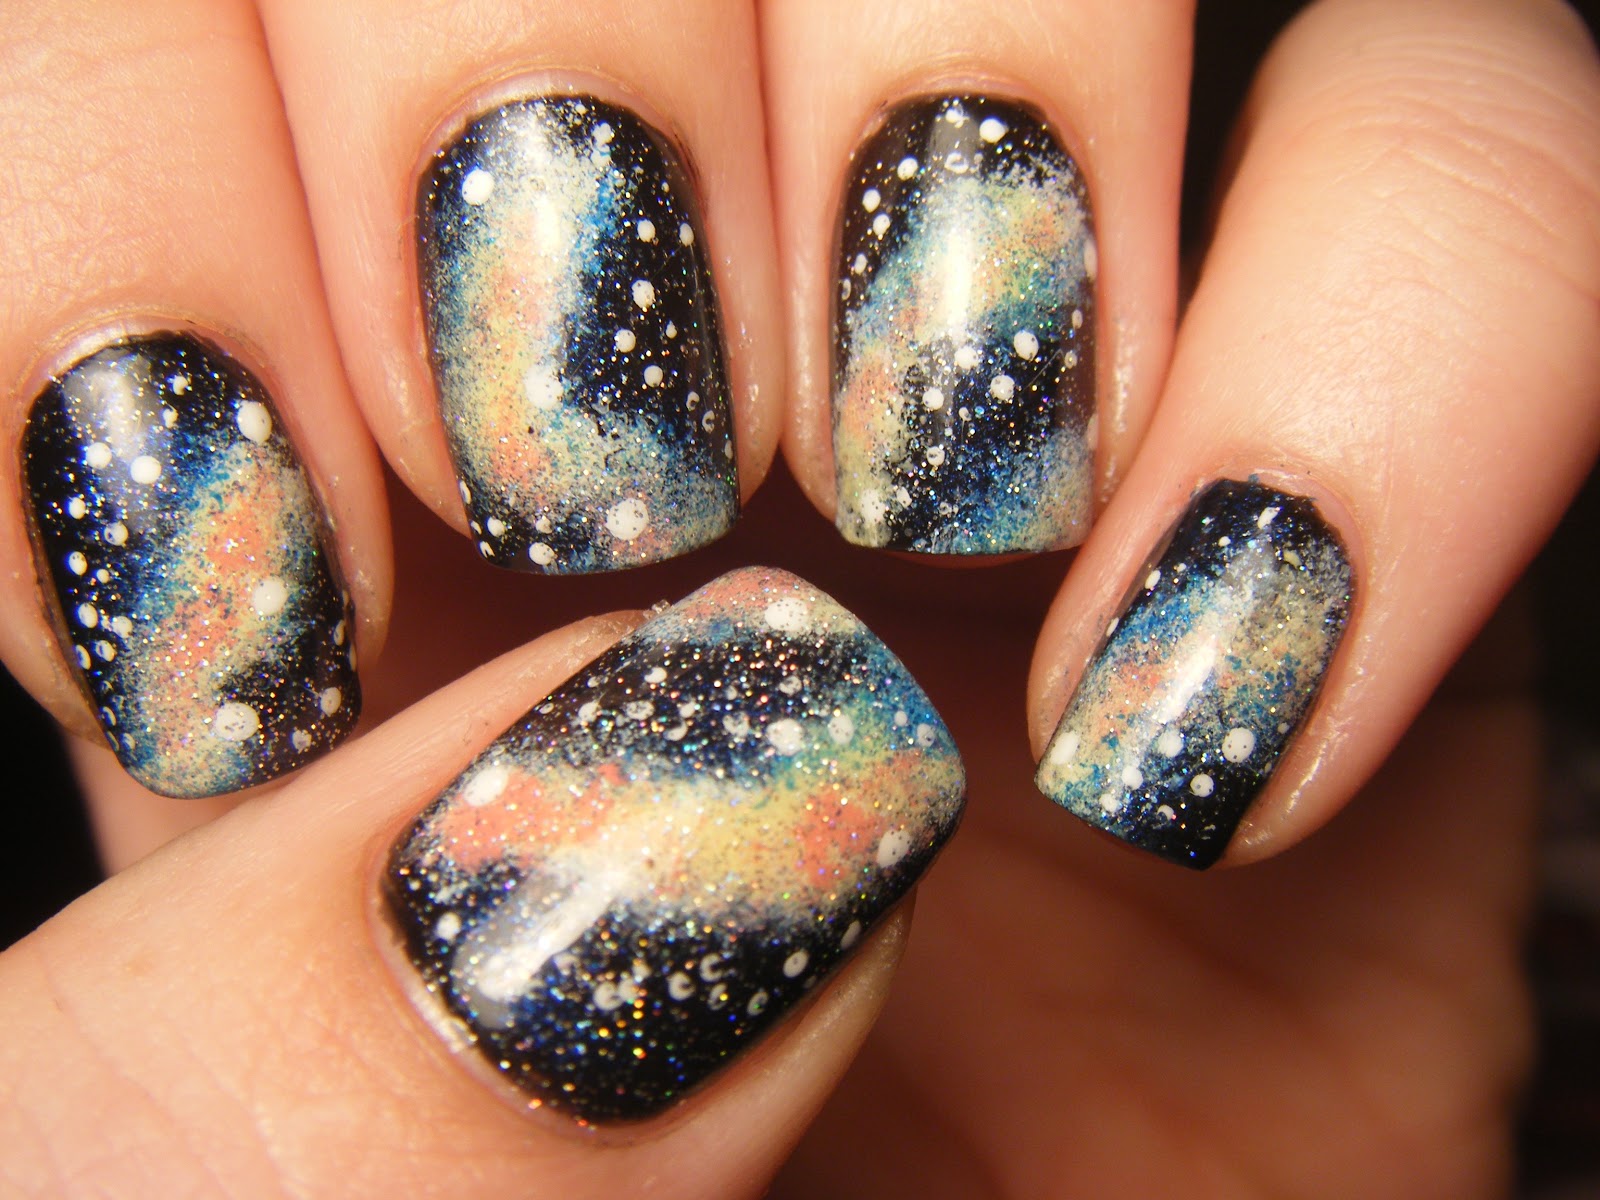 3. "DIY Galaxy Nails" by cutepolish - wide 8